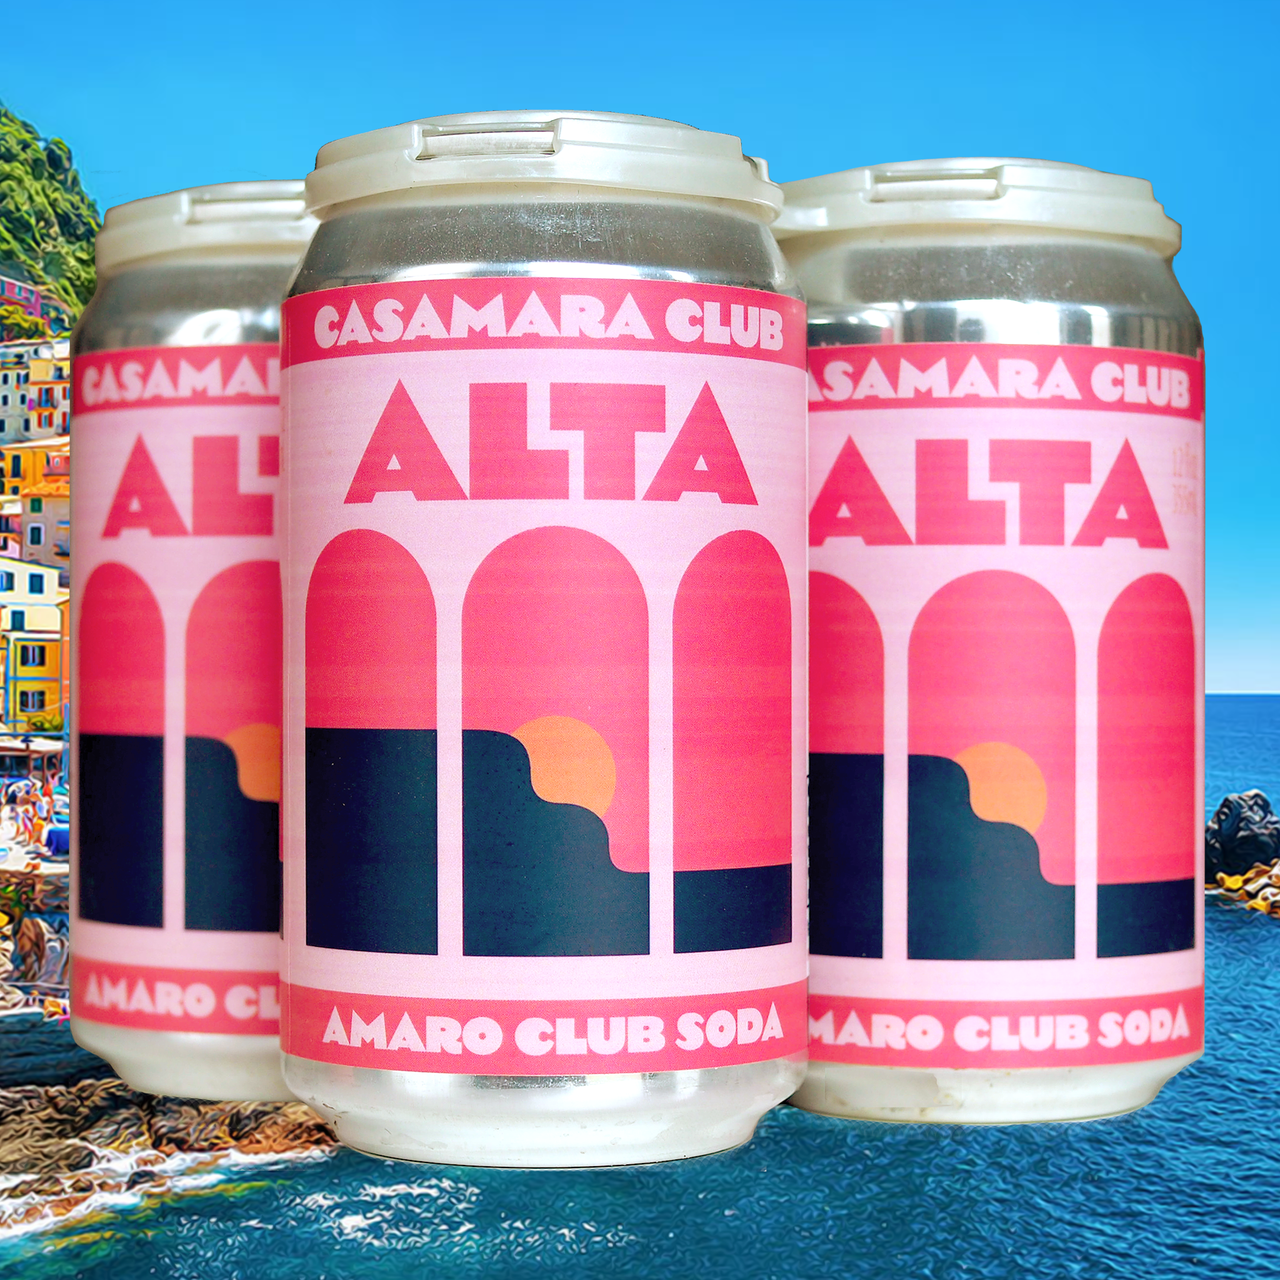 ALTA- the aperitivo leisure soda